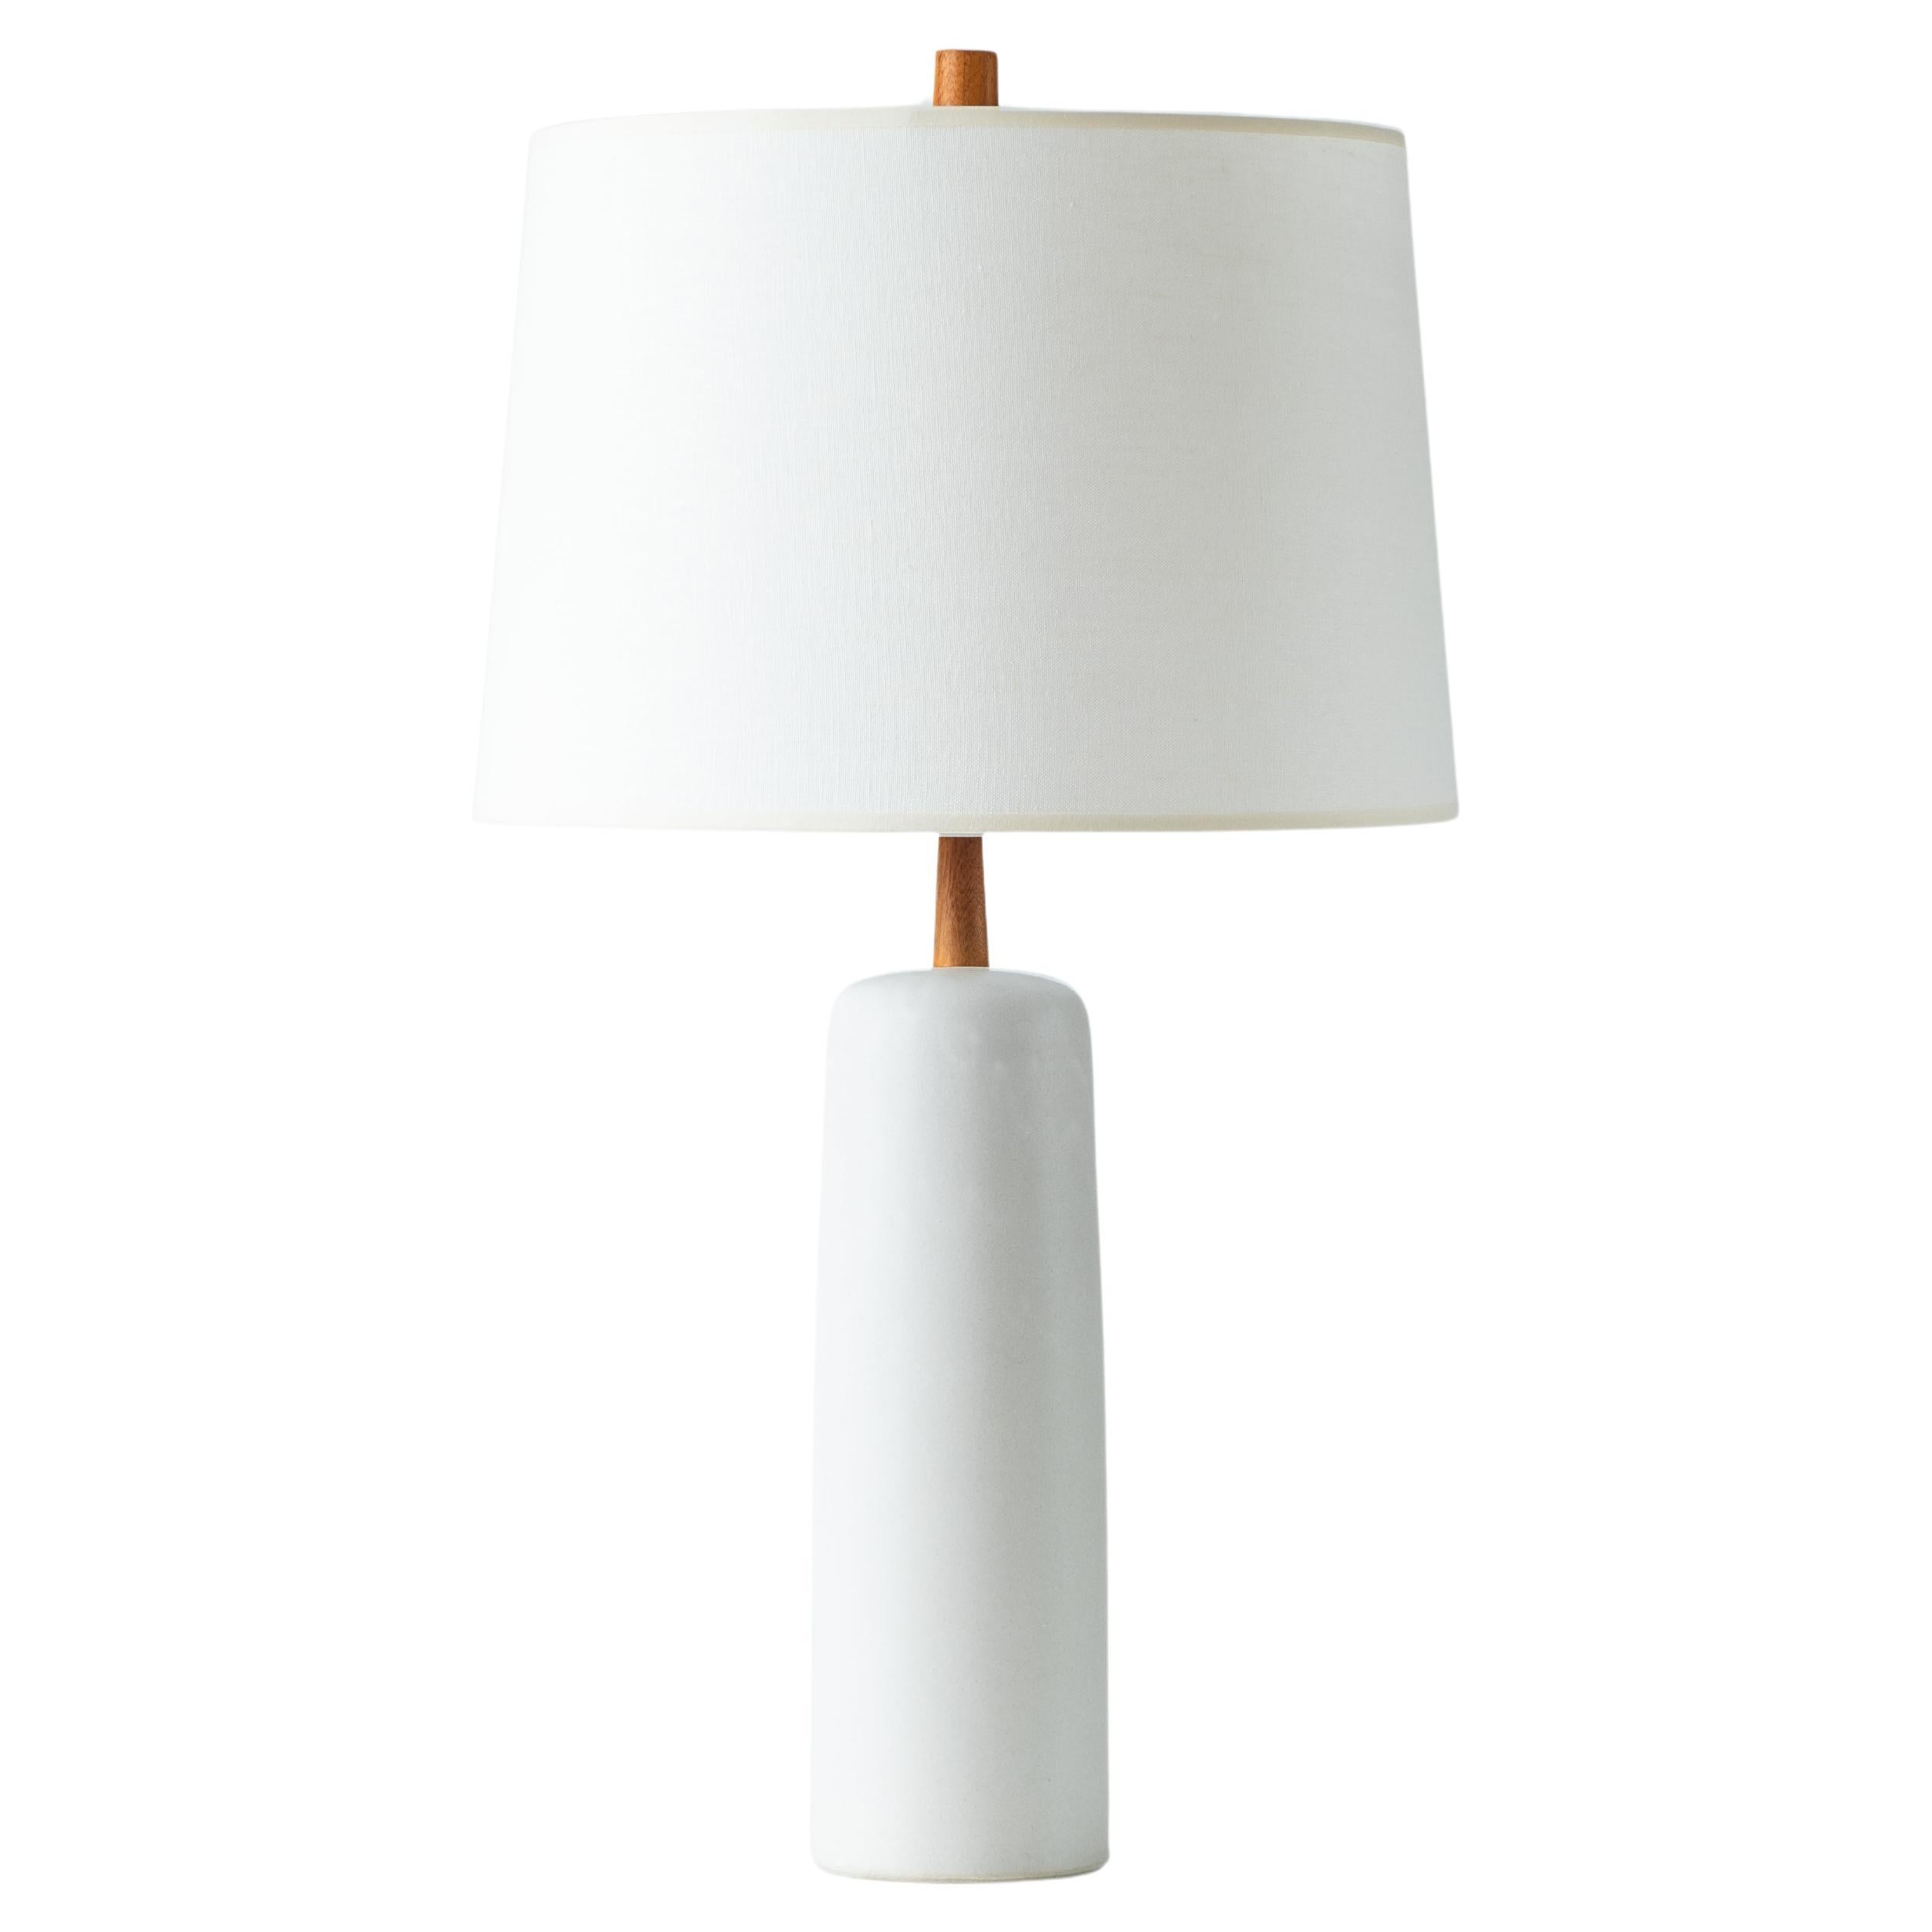 Martz / Marshall Studios Ceramic Table Lamp, Matte White Glaze